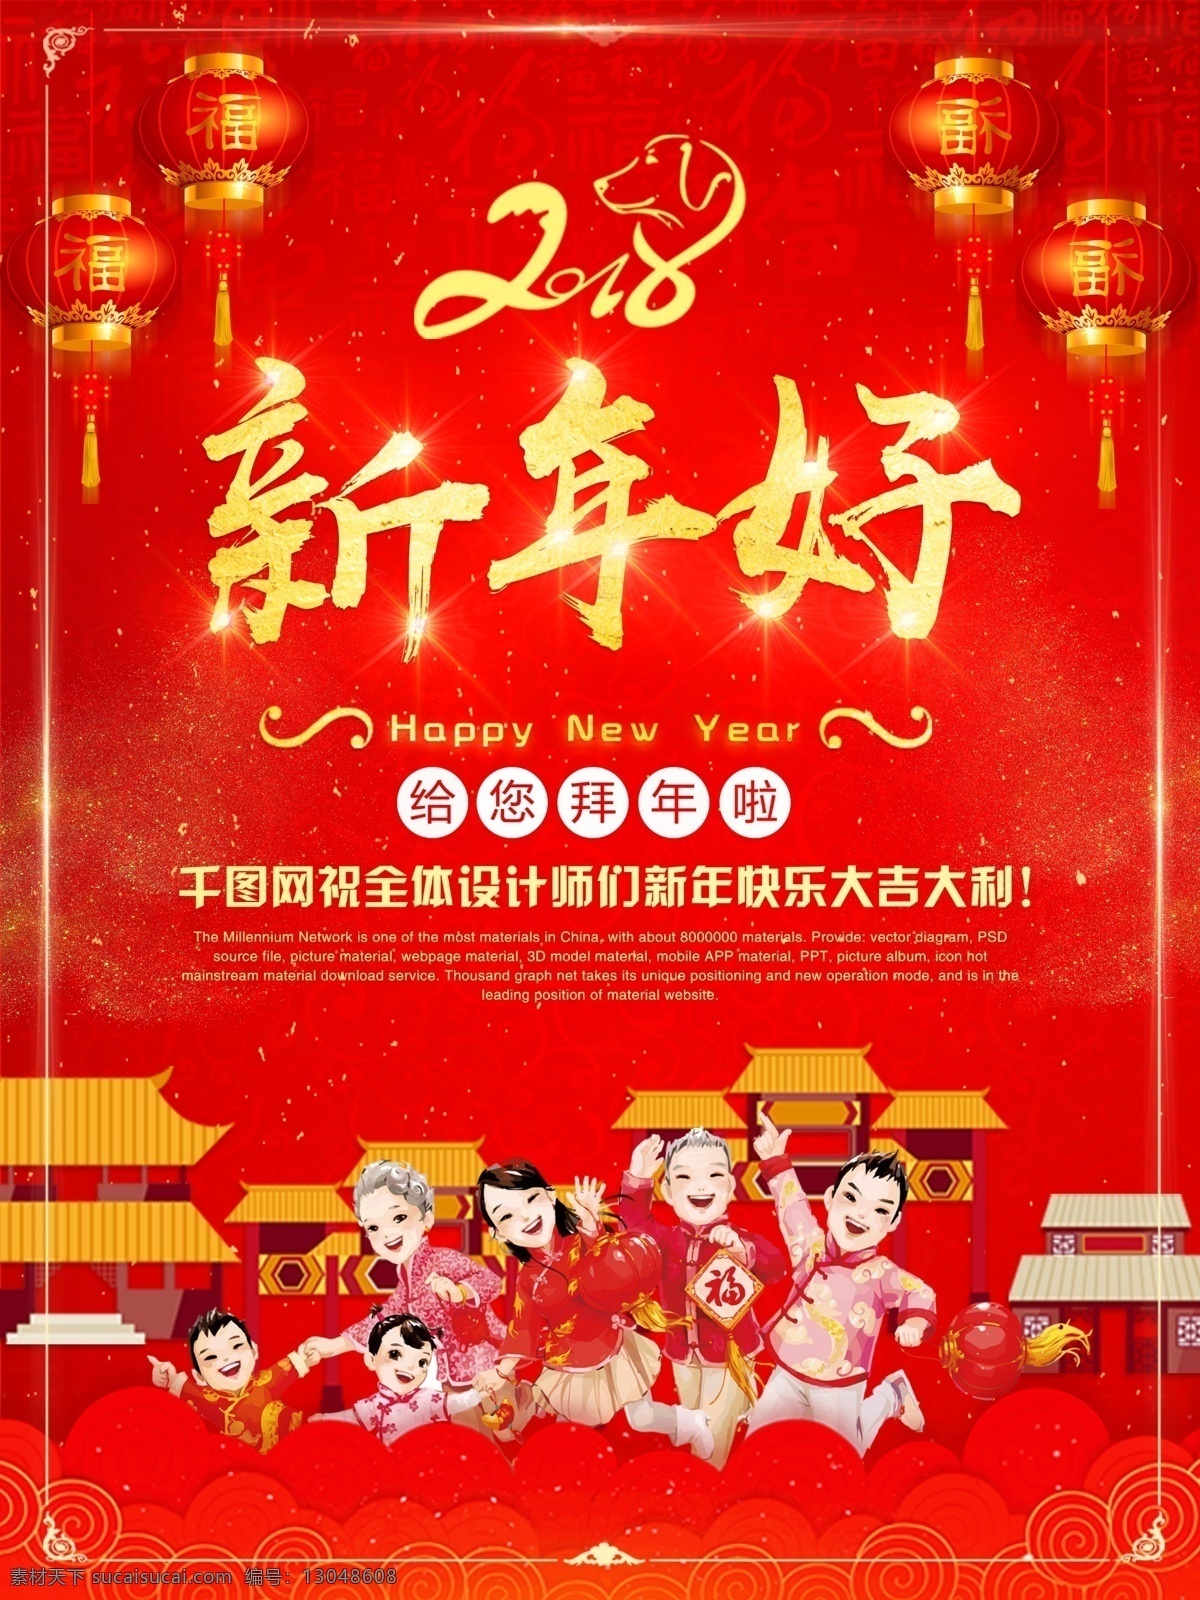 2018 新春 拜年 中国 红 新年 好 海报 新年好 祝福 大吉大利 祝愿 中国红 灯笼